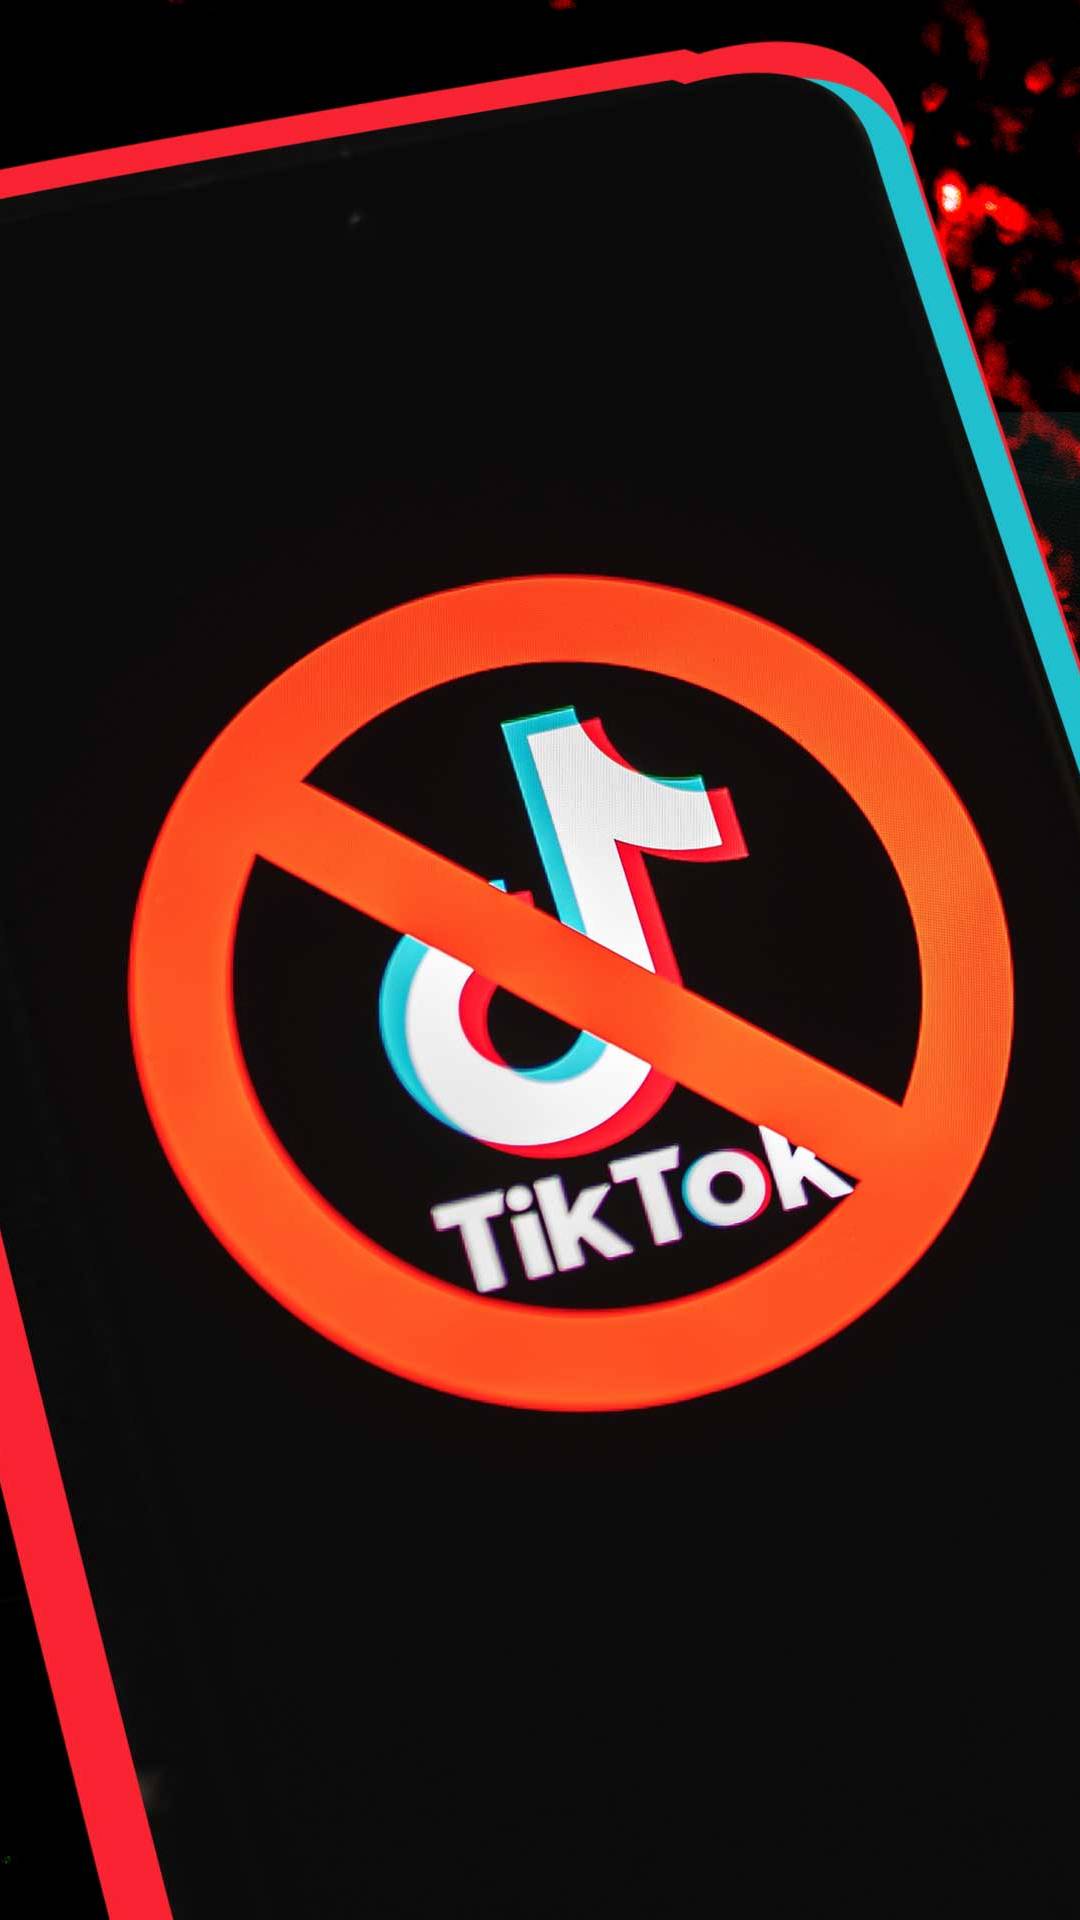  भारत से पहले इस देश ने TikTok पर लगाया था Ban, इन देशों में भी बैन है चीनी ऐप